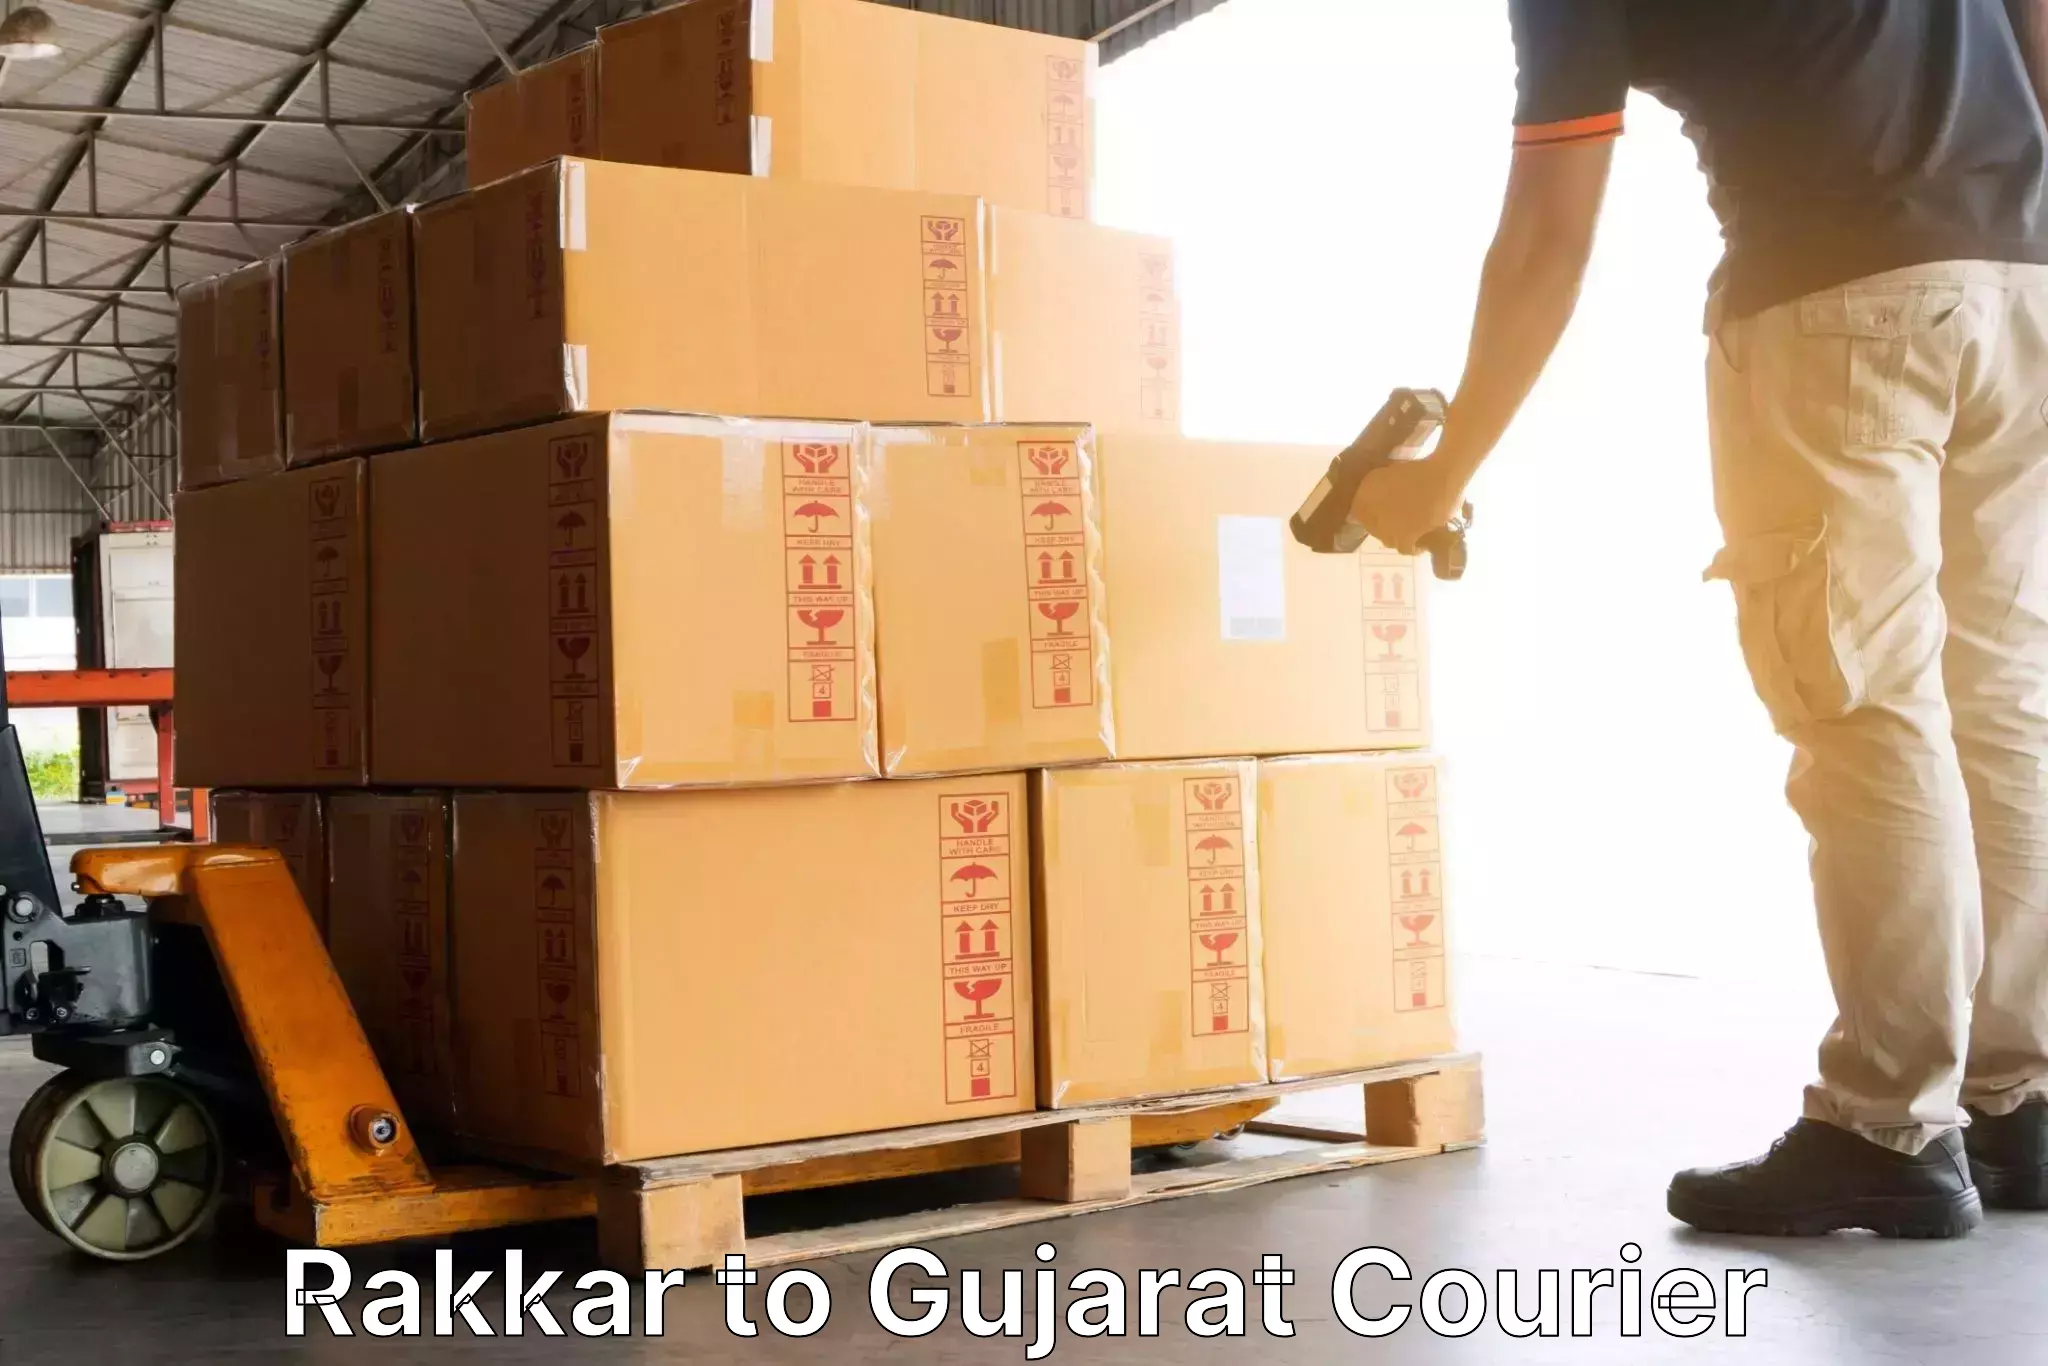 User-friendly courier app in Rakkar to Gujarat